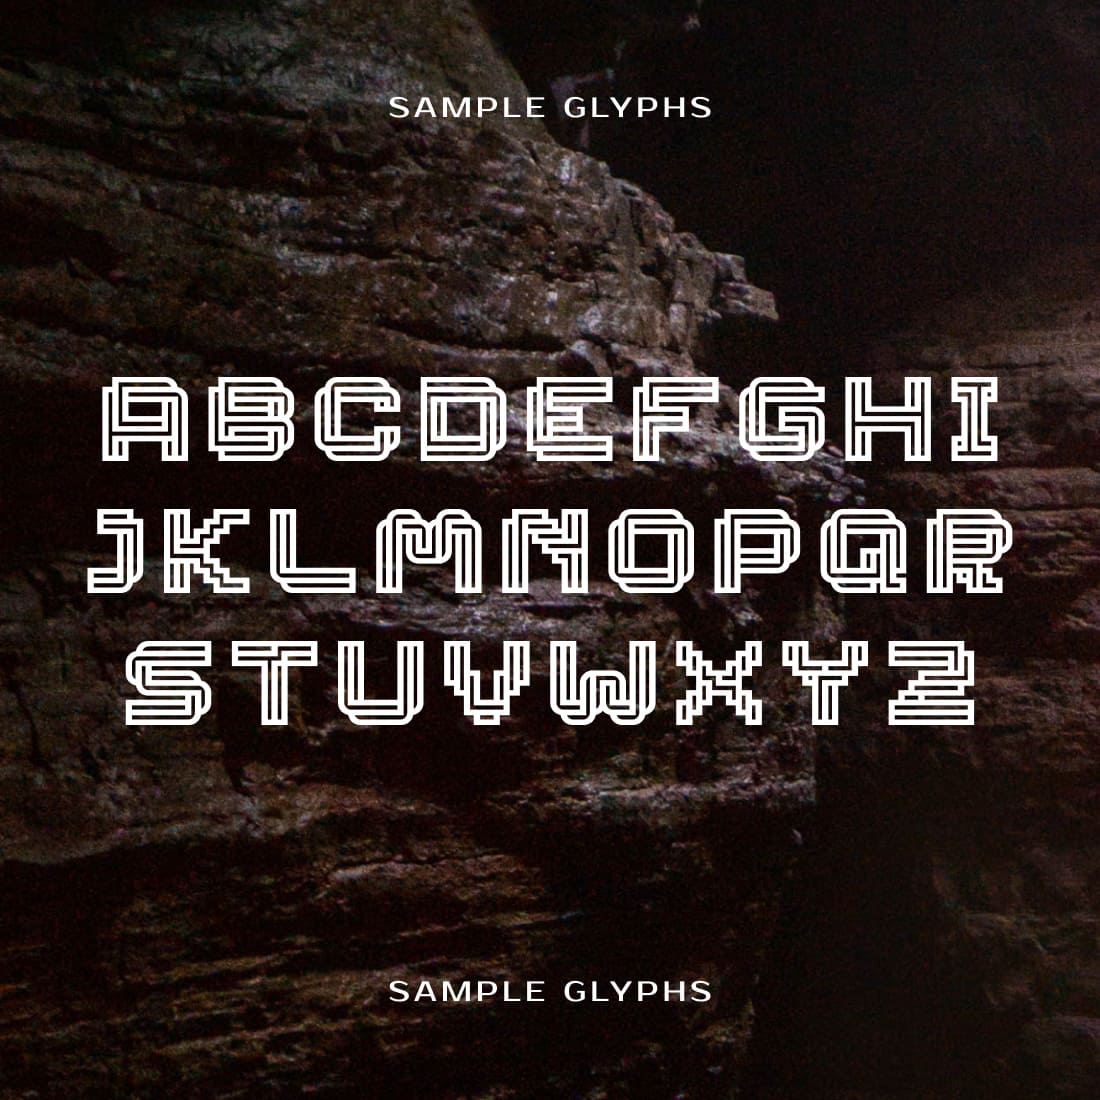 Skywalker star wars font glyphs preview.